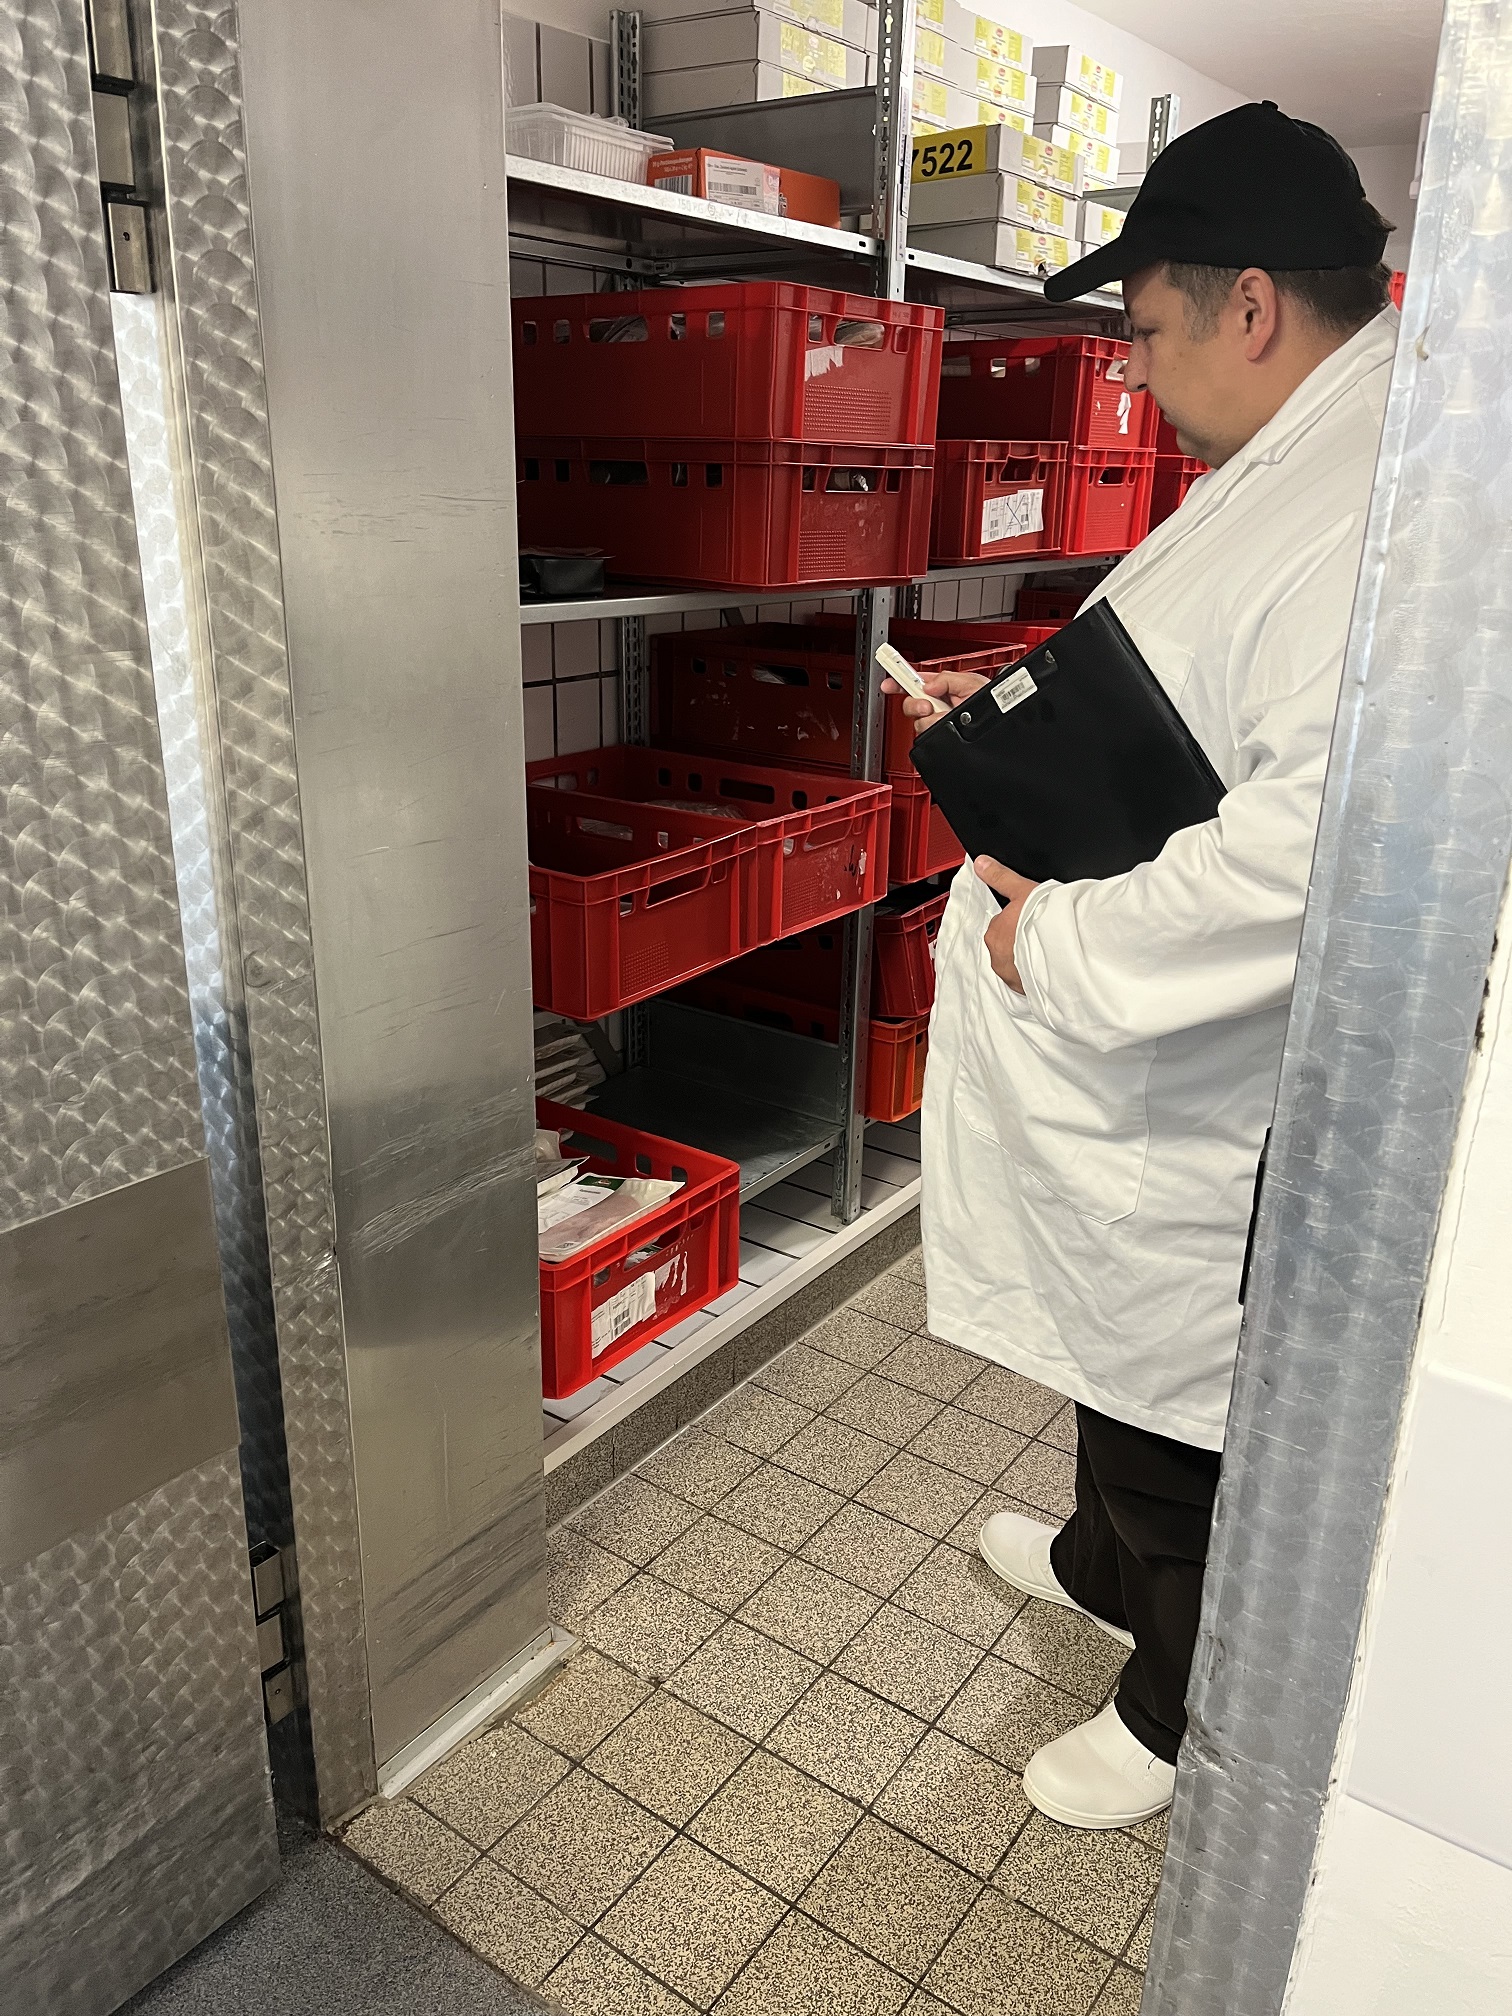 Antonio D’Angelo, Lebensmittelkontrolleur in Fortbildung beim Landkreis Gießen, überprüft die Temperatur der verpackten Wurst in einem der Kühlräume der UKGM-Küche. (Foto: Landkreis Gießen)